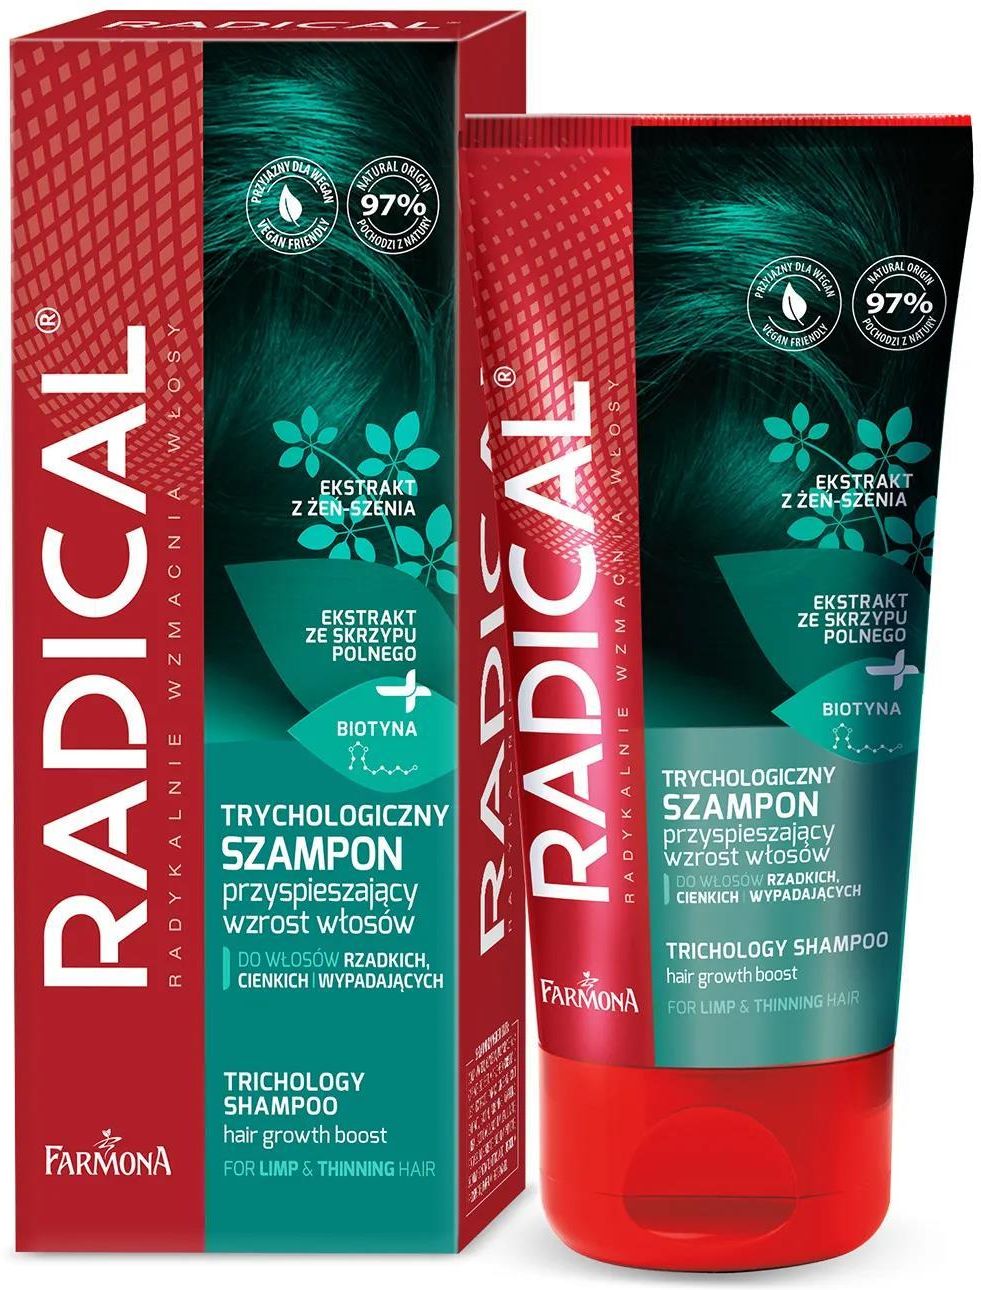 farmona szampon radical gdzie kupić